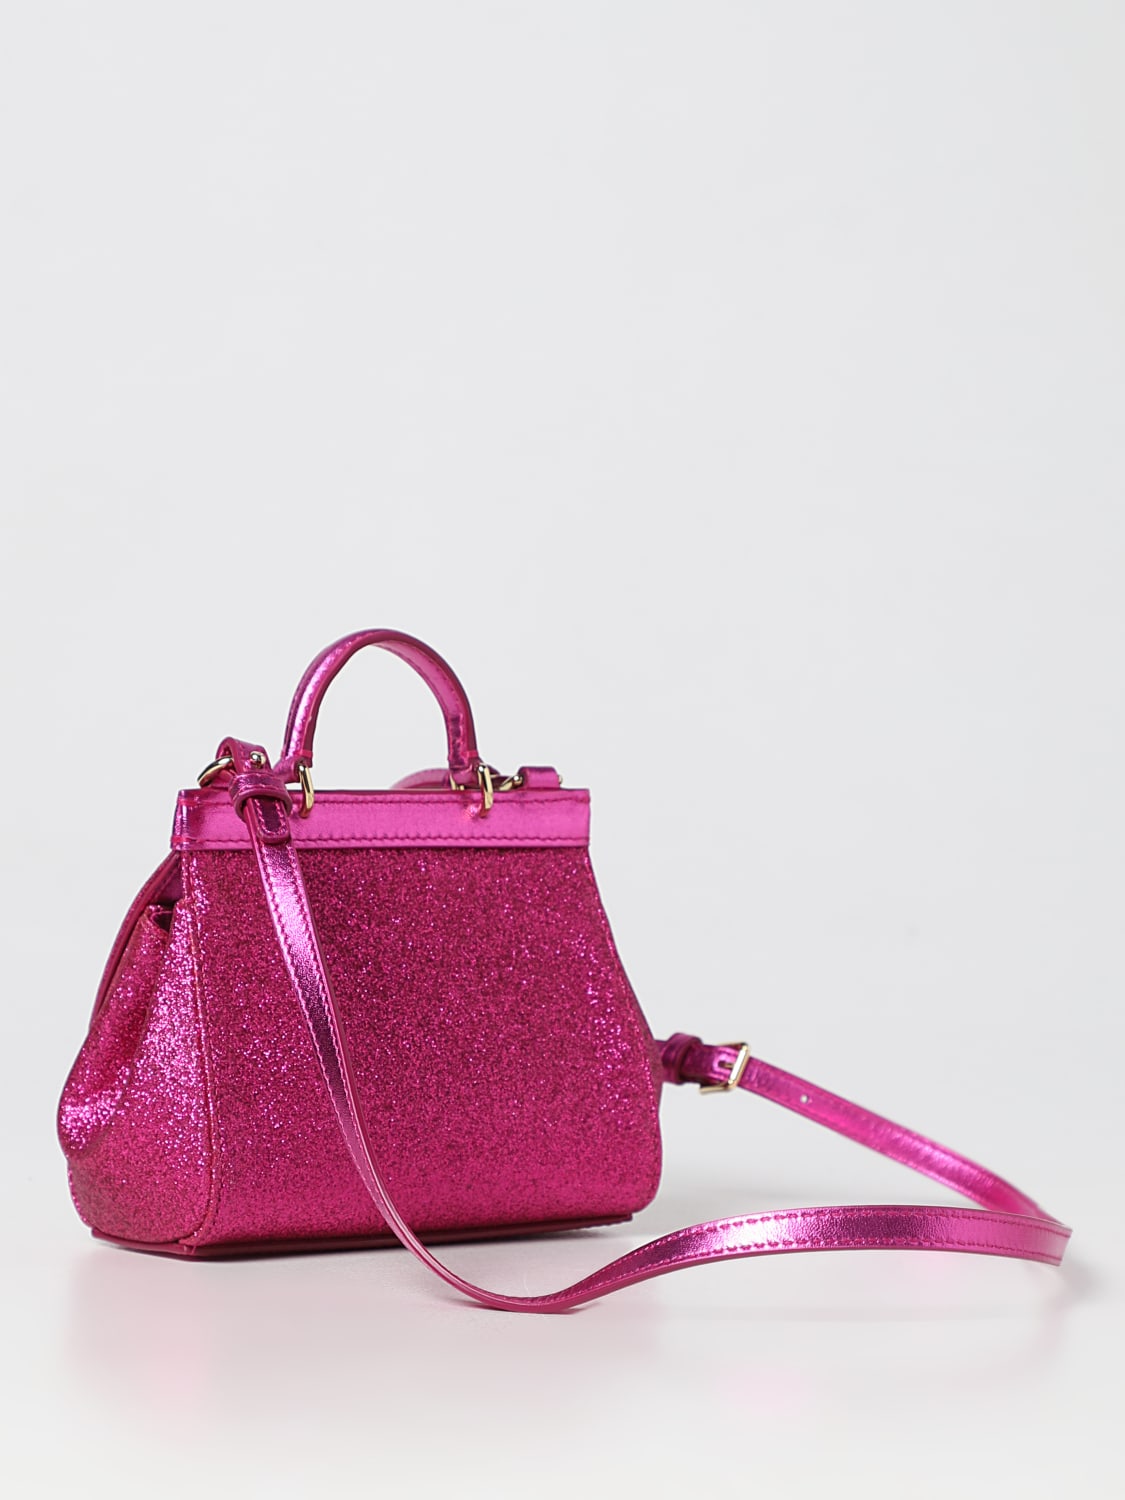 DOLCE & GABBANA: bag in glittery fabric - Fuchsia  Dolce & Gabbana clutch  EB0003AA745 online at